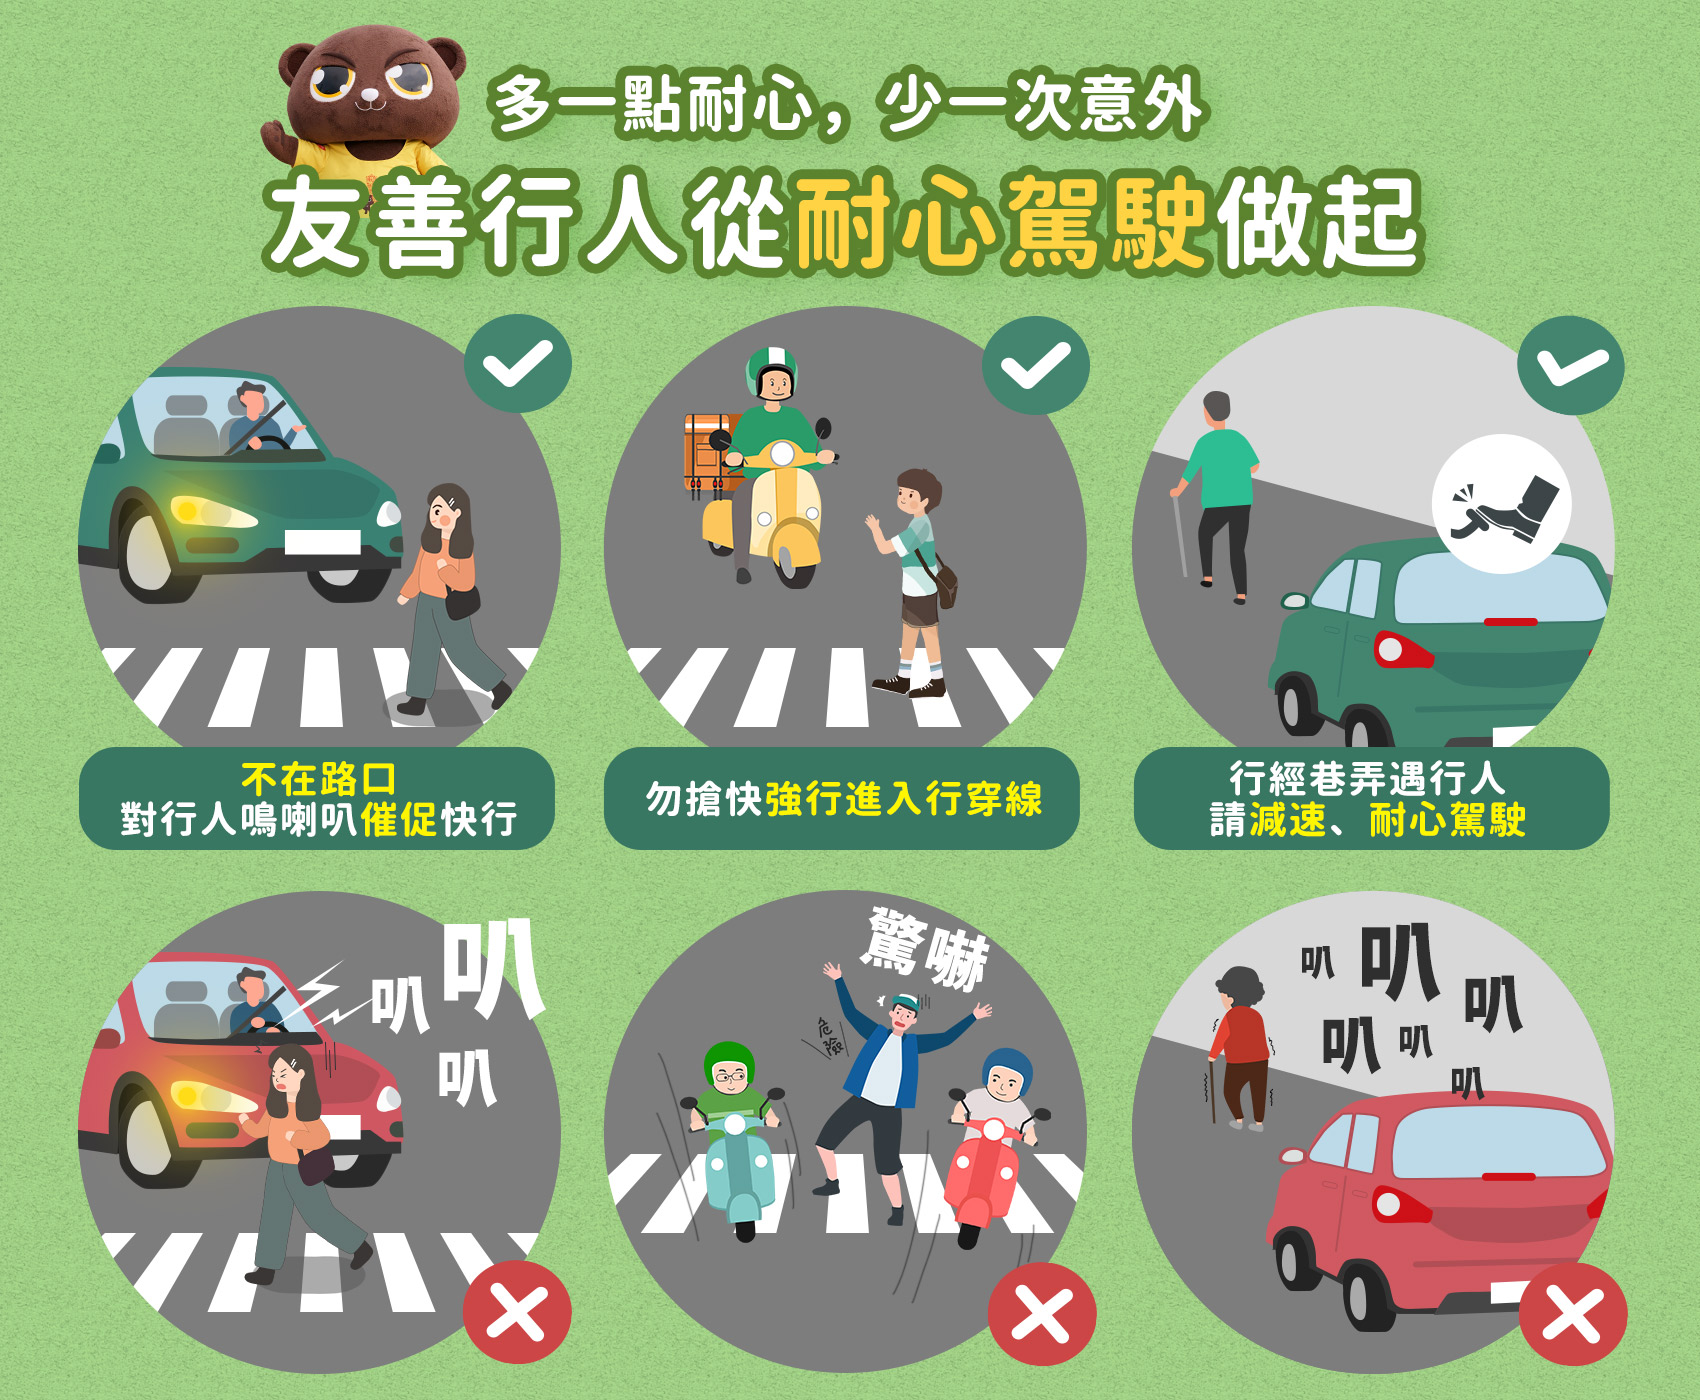 「路口安全，停讓行人」～交通安全宣導素材（影音圖文）下載